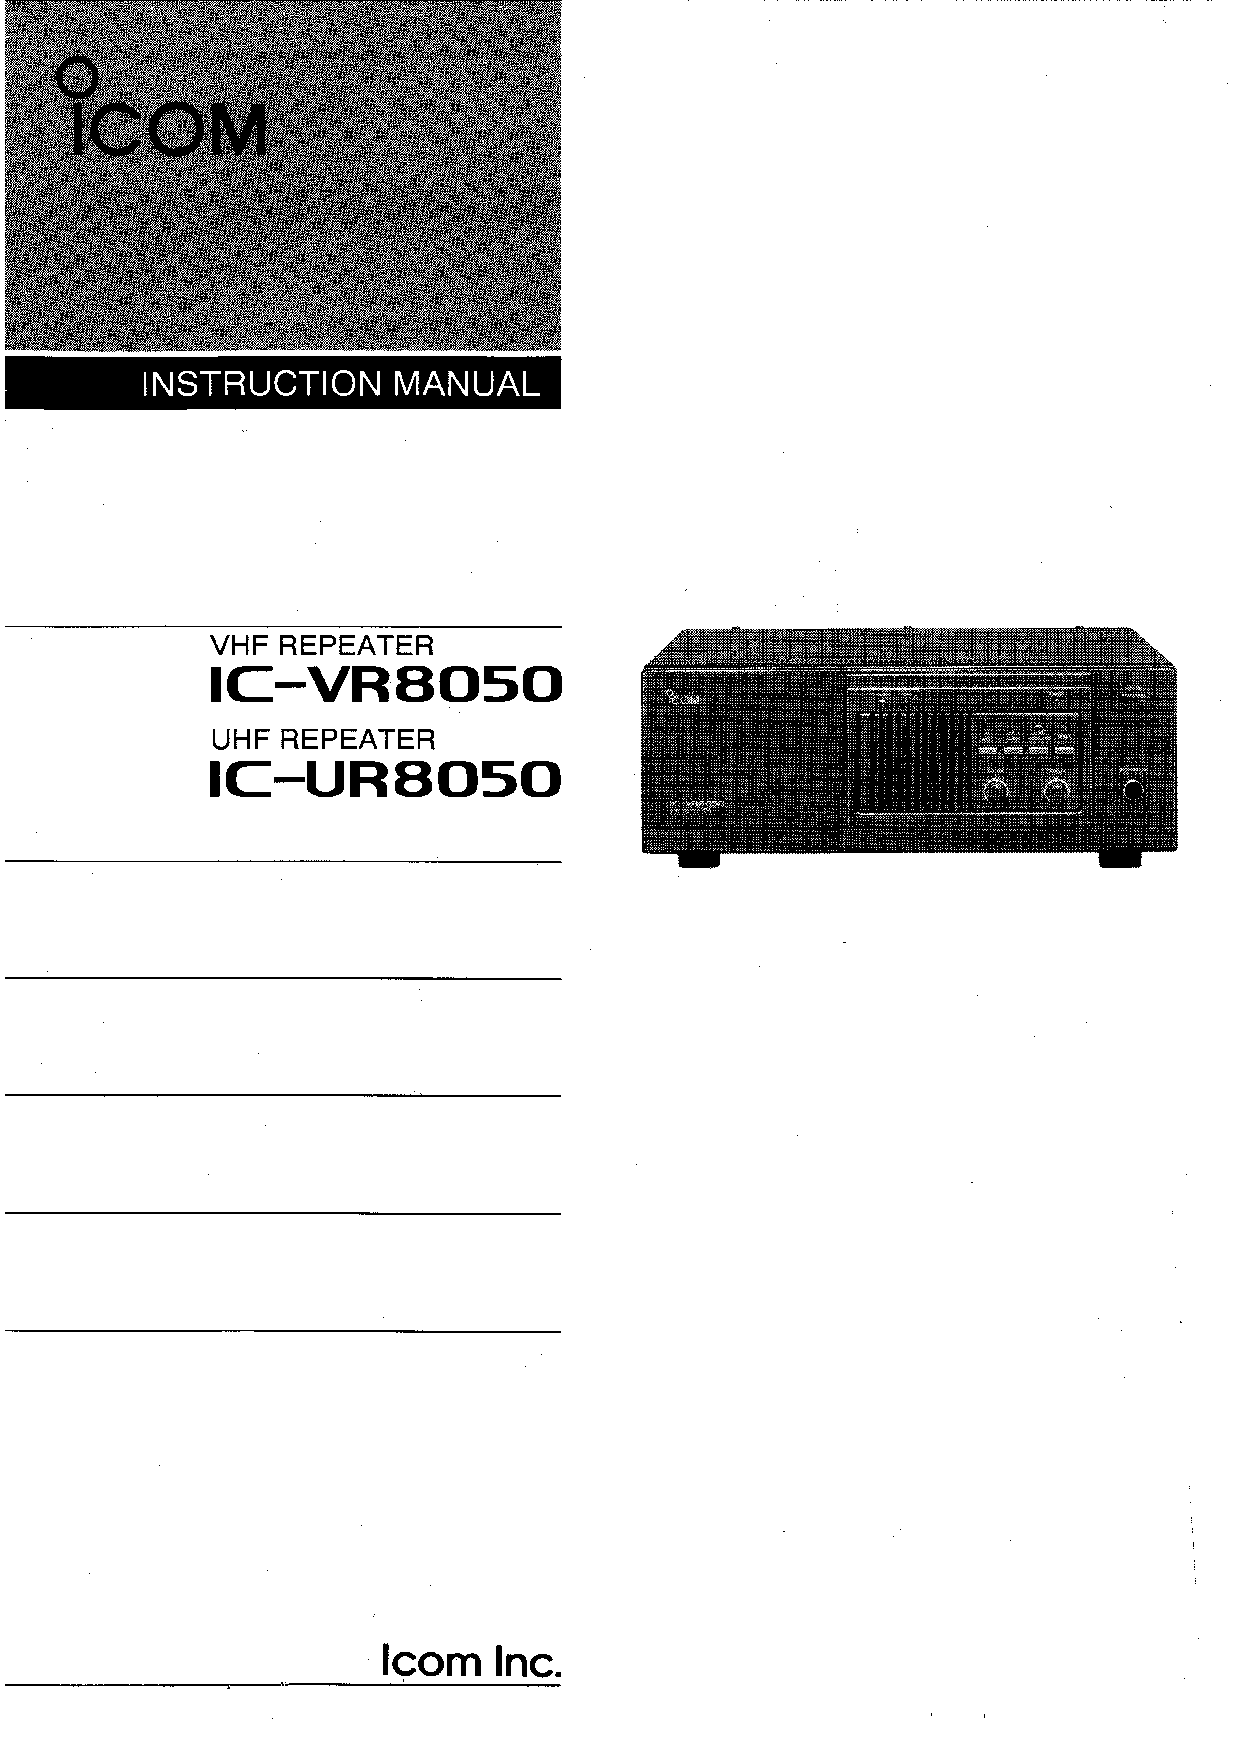 Icom IC-VR8050, IC-UR8050 User Manual